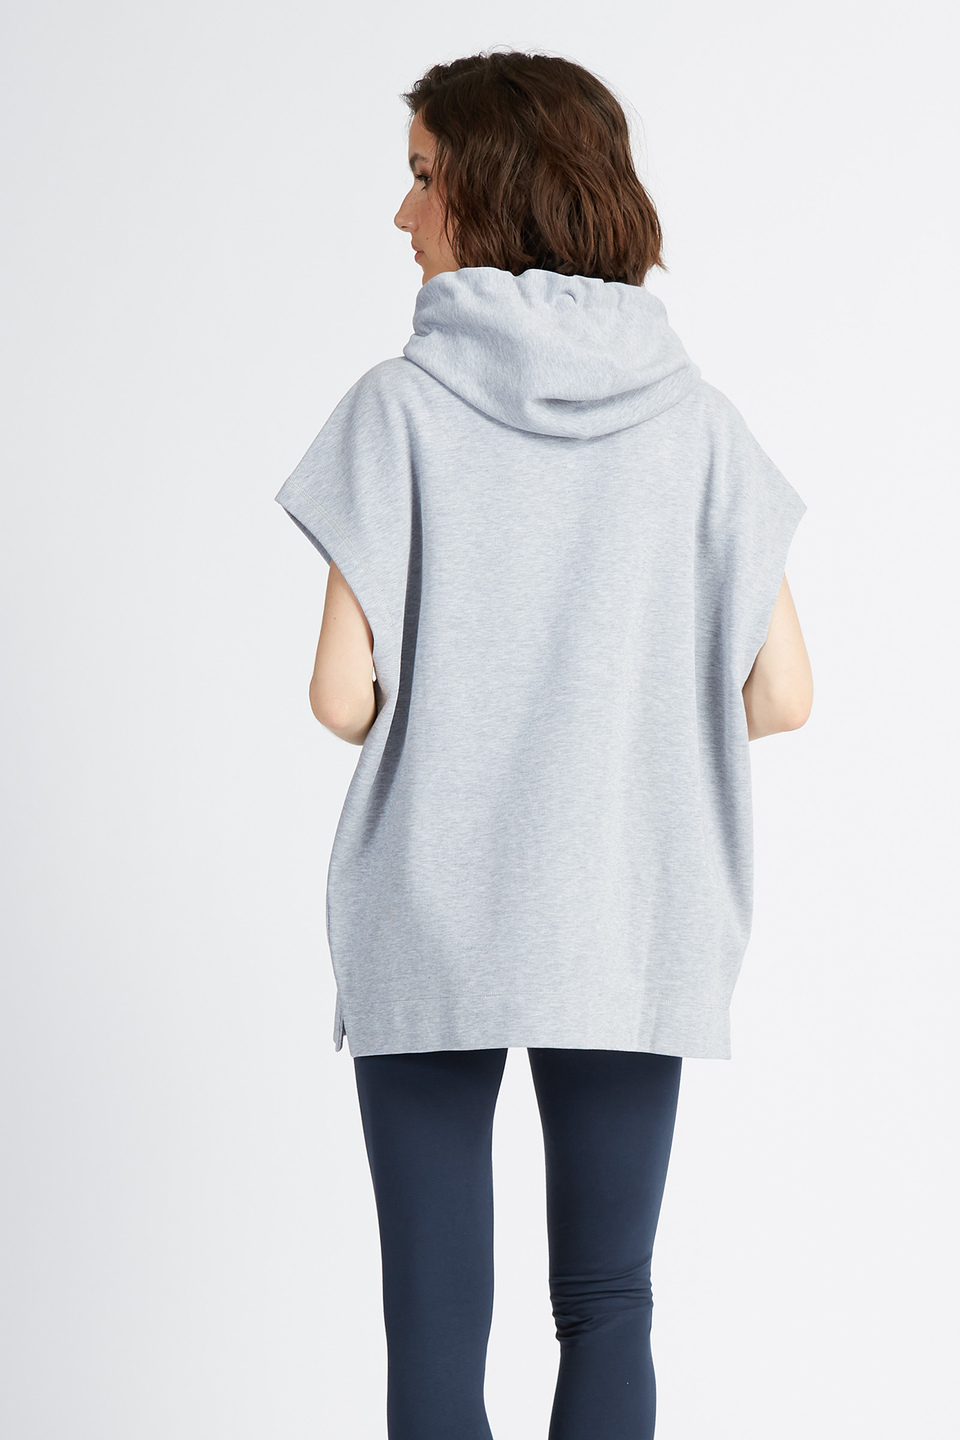 Ärmelloses Damen-Sweatshirt mit durchgehendem Reißverschluss, einfarbig Polo Academy - Vondra | La Martina - Official Online Shop